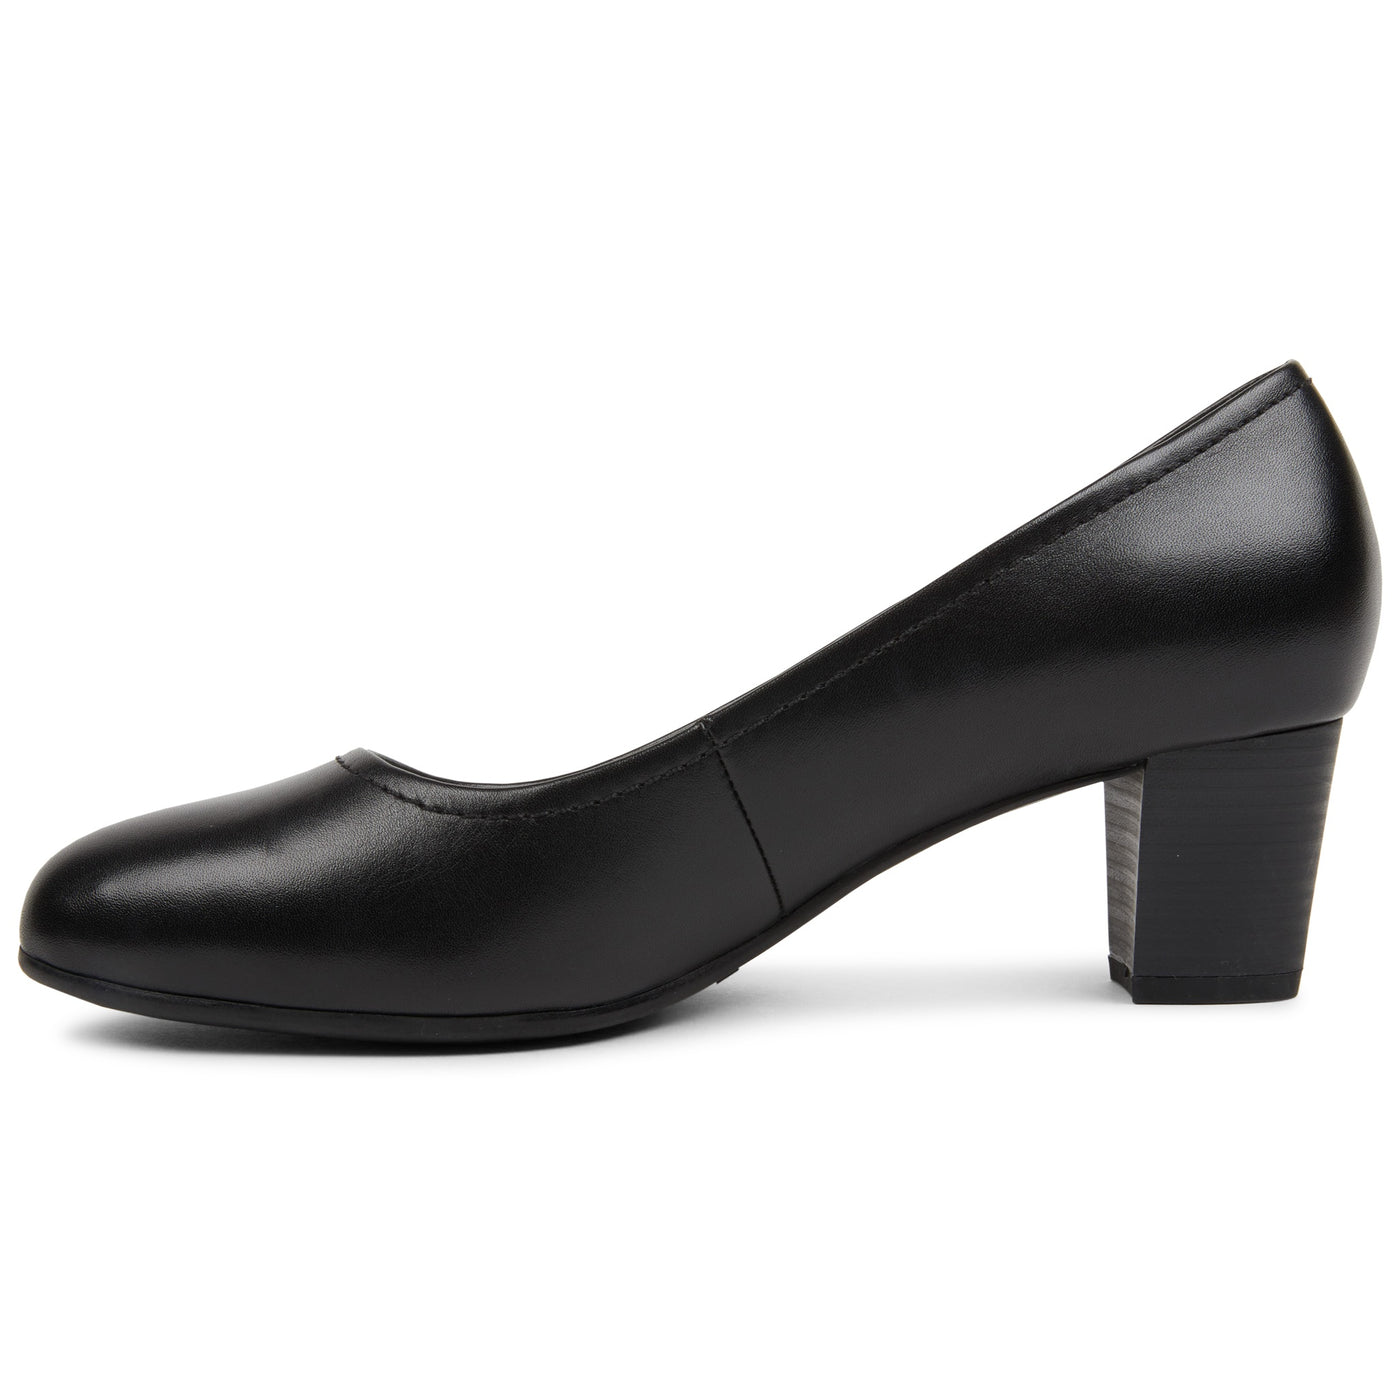 PLANET SHOES COBRA BLACK - Women Heels - Collective Shoes 